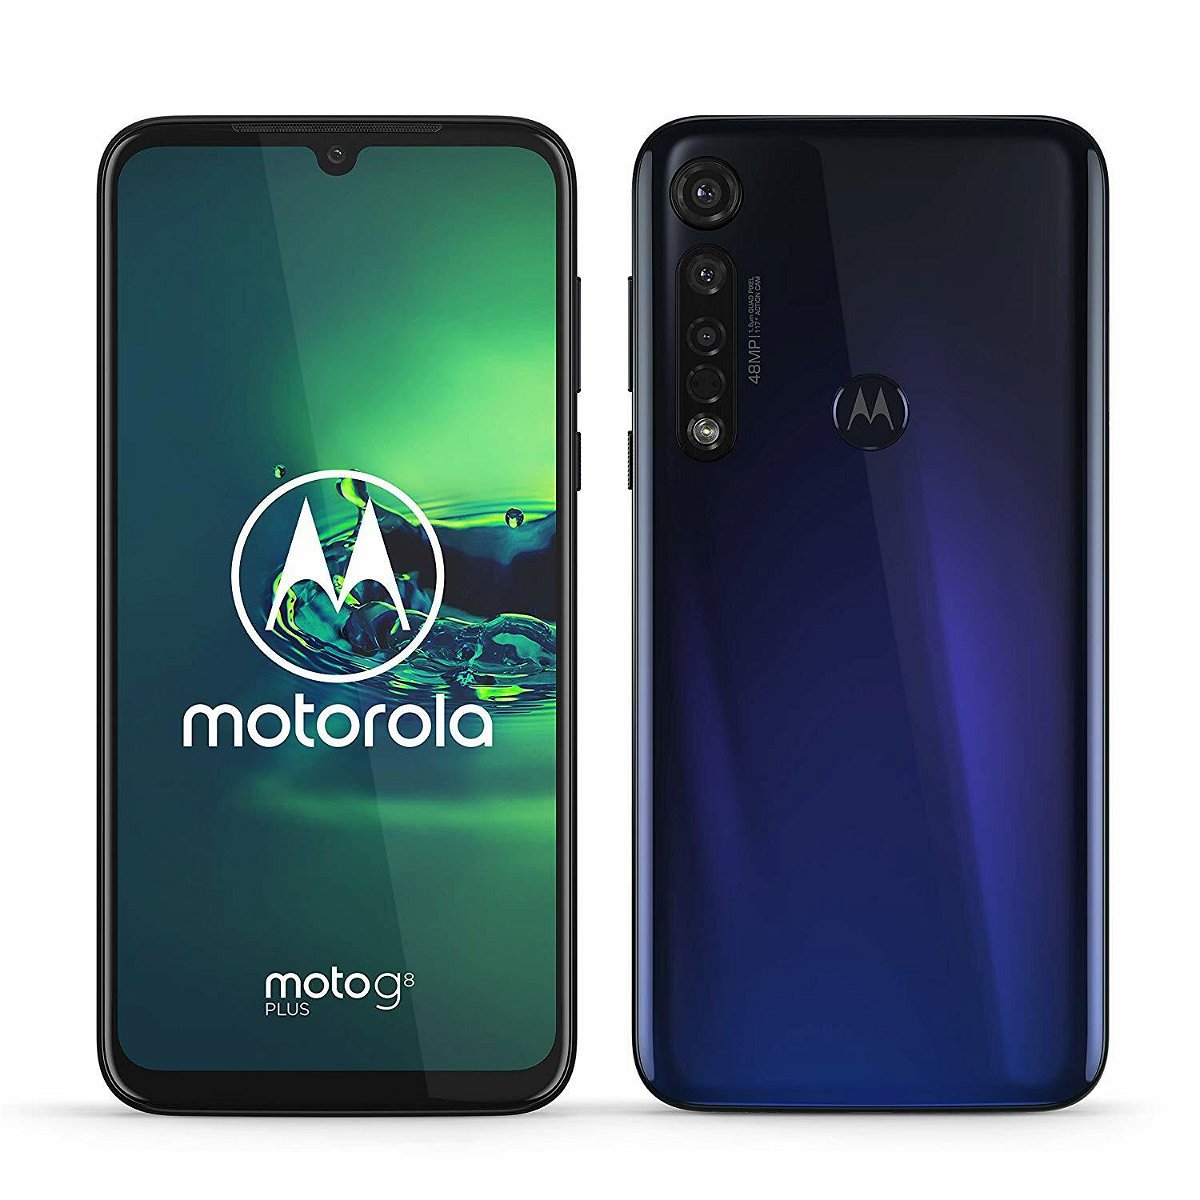 Immagine stampa del Motorola G8 Plus